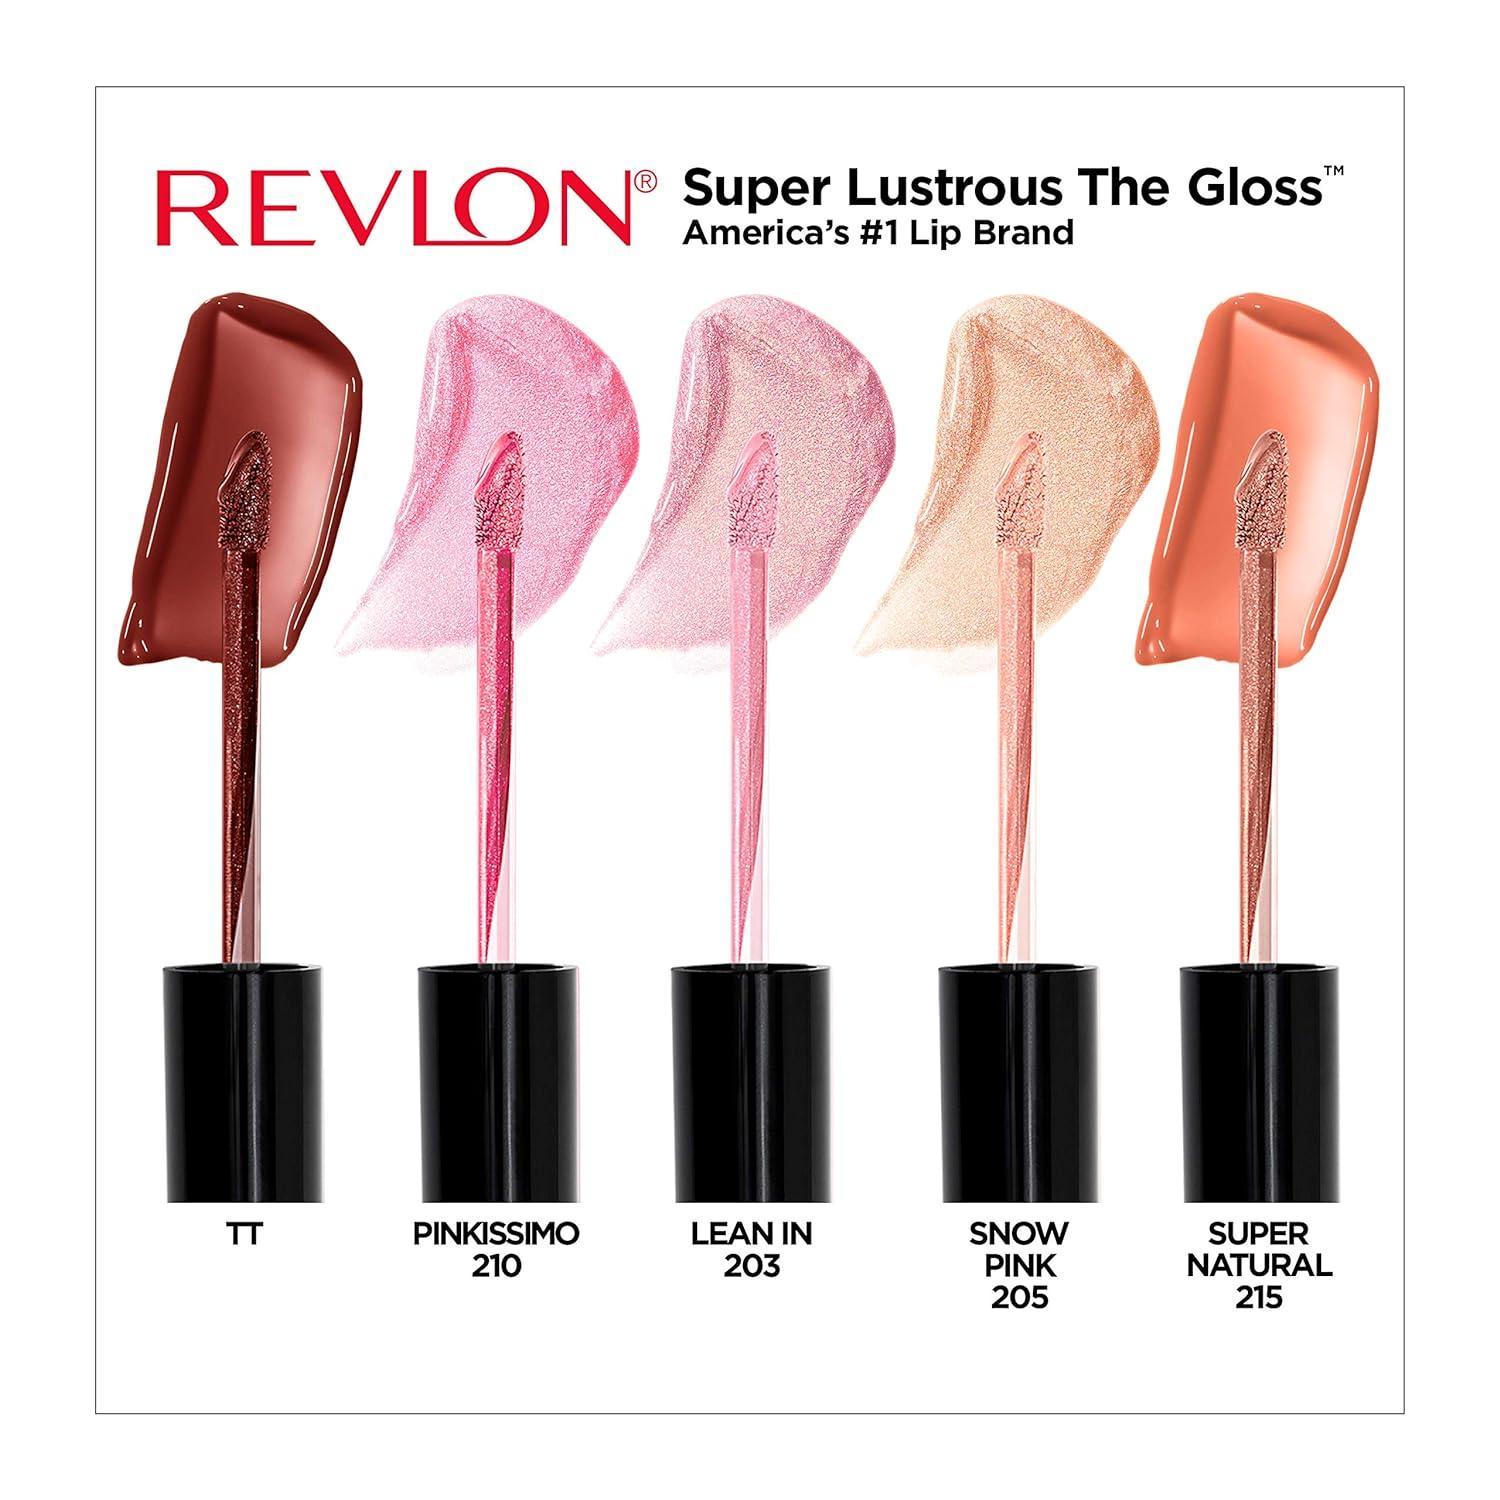 Revlon Super Lustrous The Gloss Lip Gloss